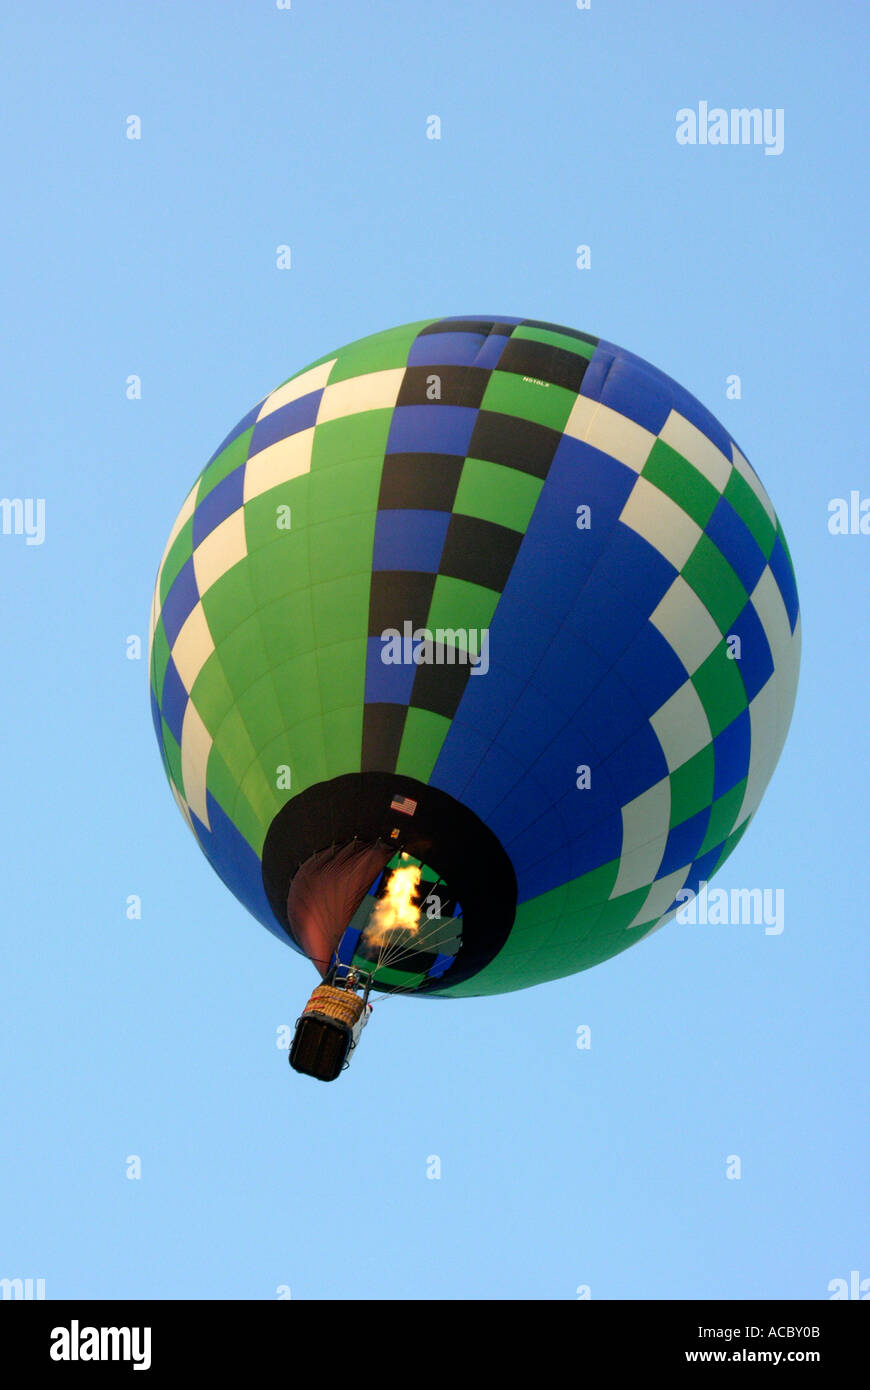 Festival de montgolfières annuel concours tenu à Howell Michigan Balloon fest Banque D'Images